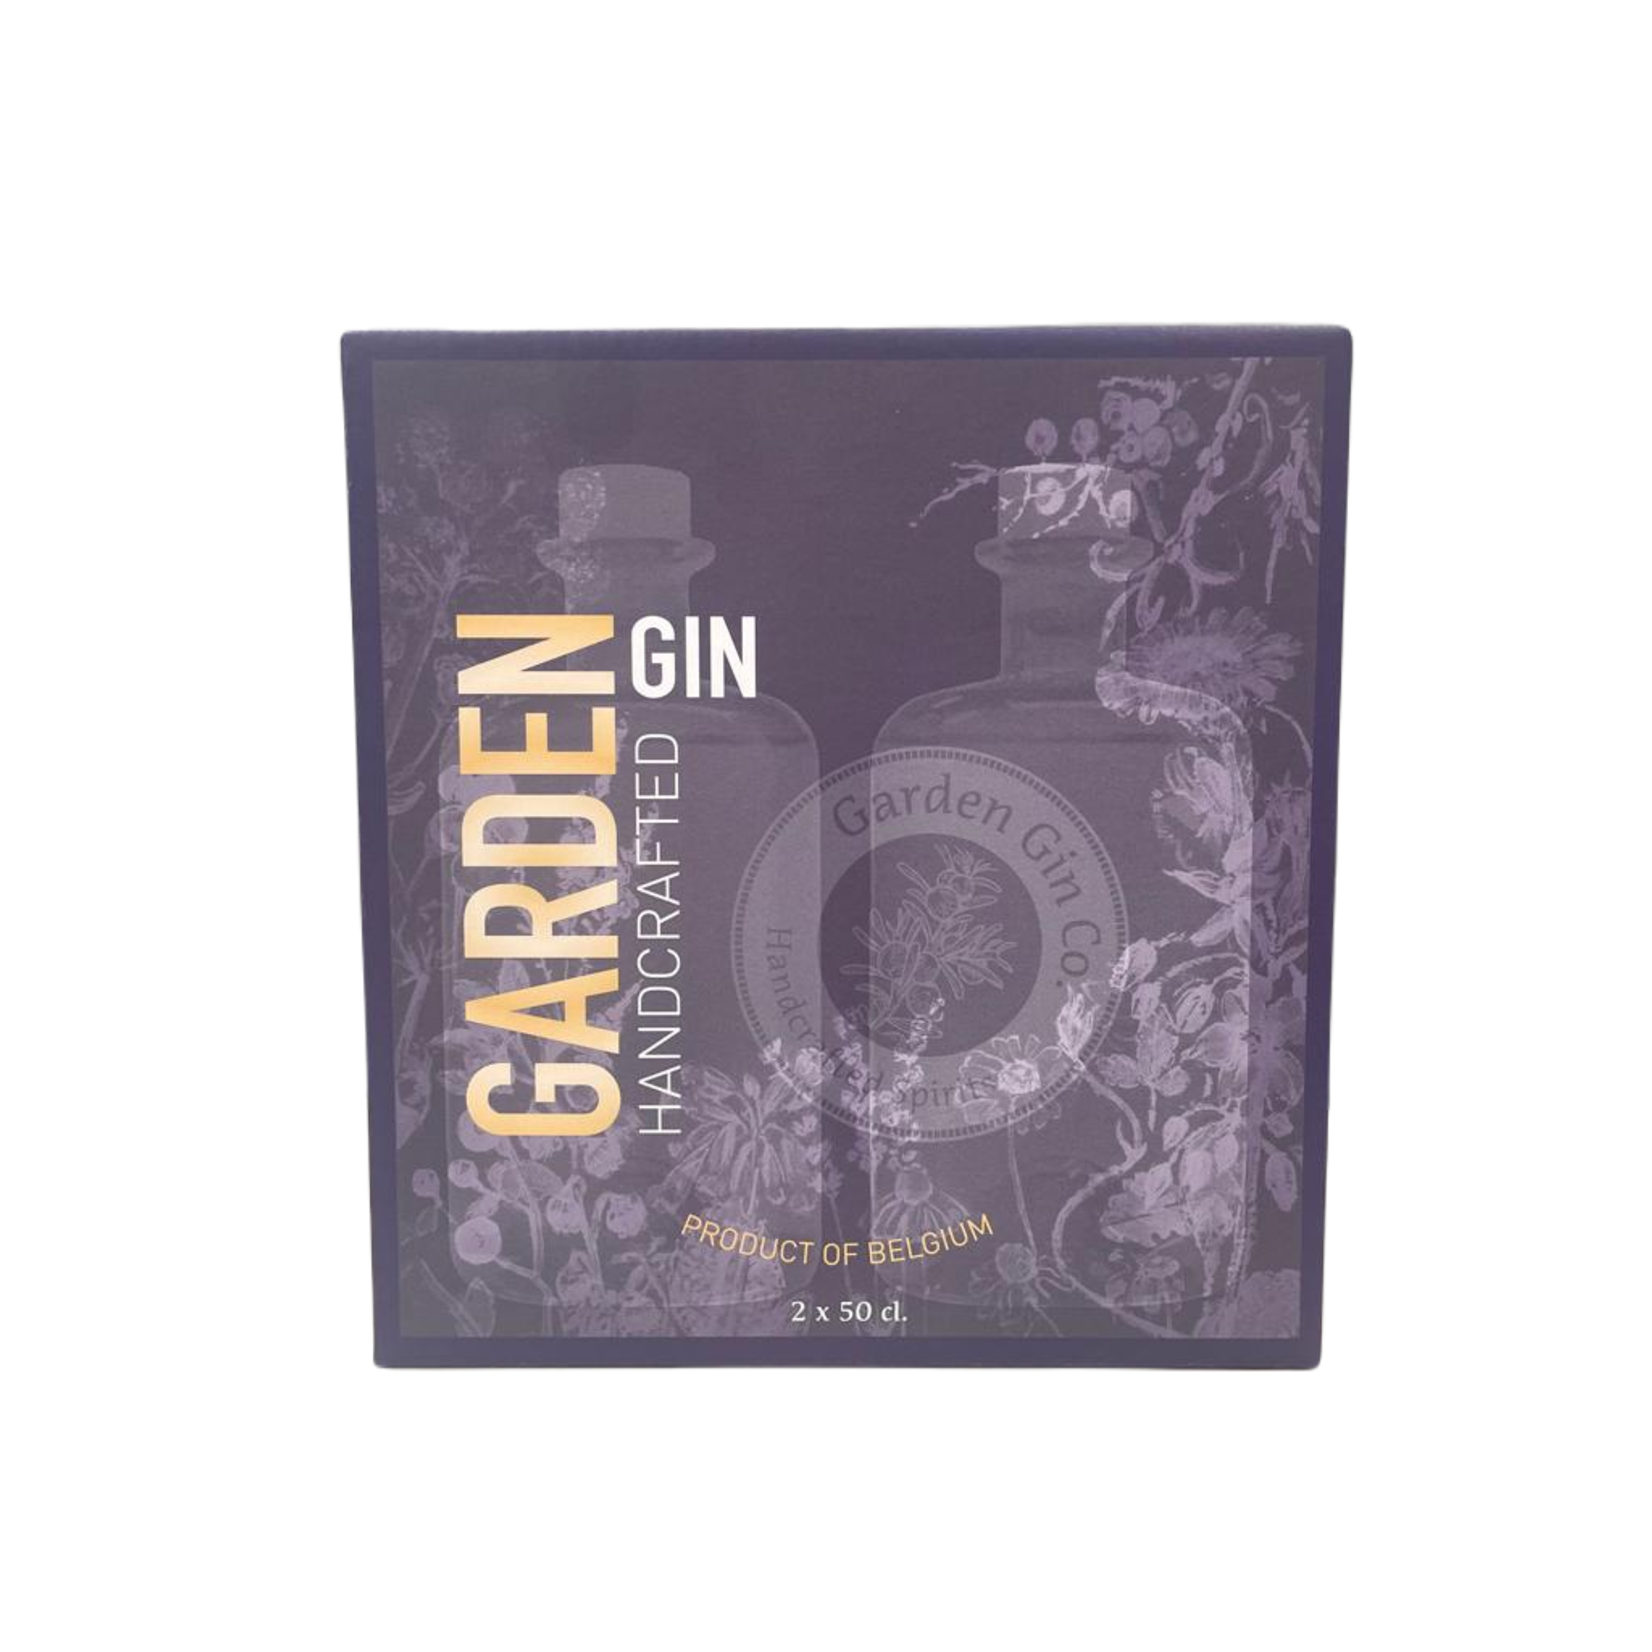 Garden Gin Premium pakket CERA Notengin & Garden Gin (2 x 50cl)